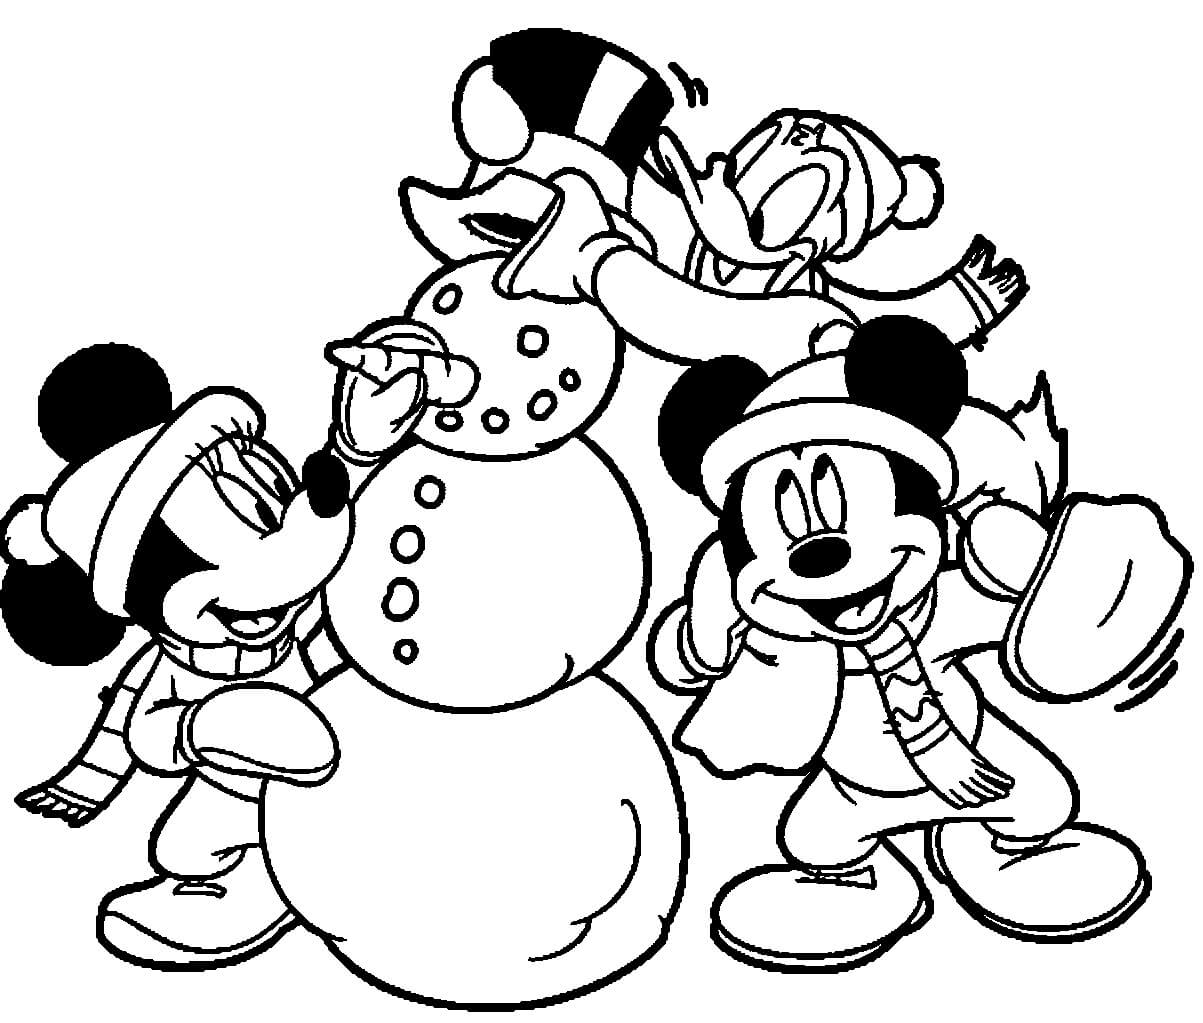 Mickey Mouse und seine Freunde bauen Schneemann